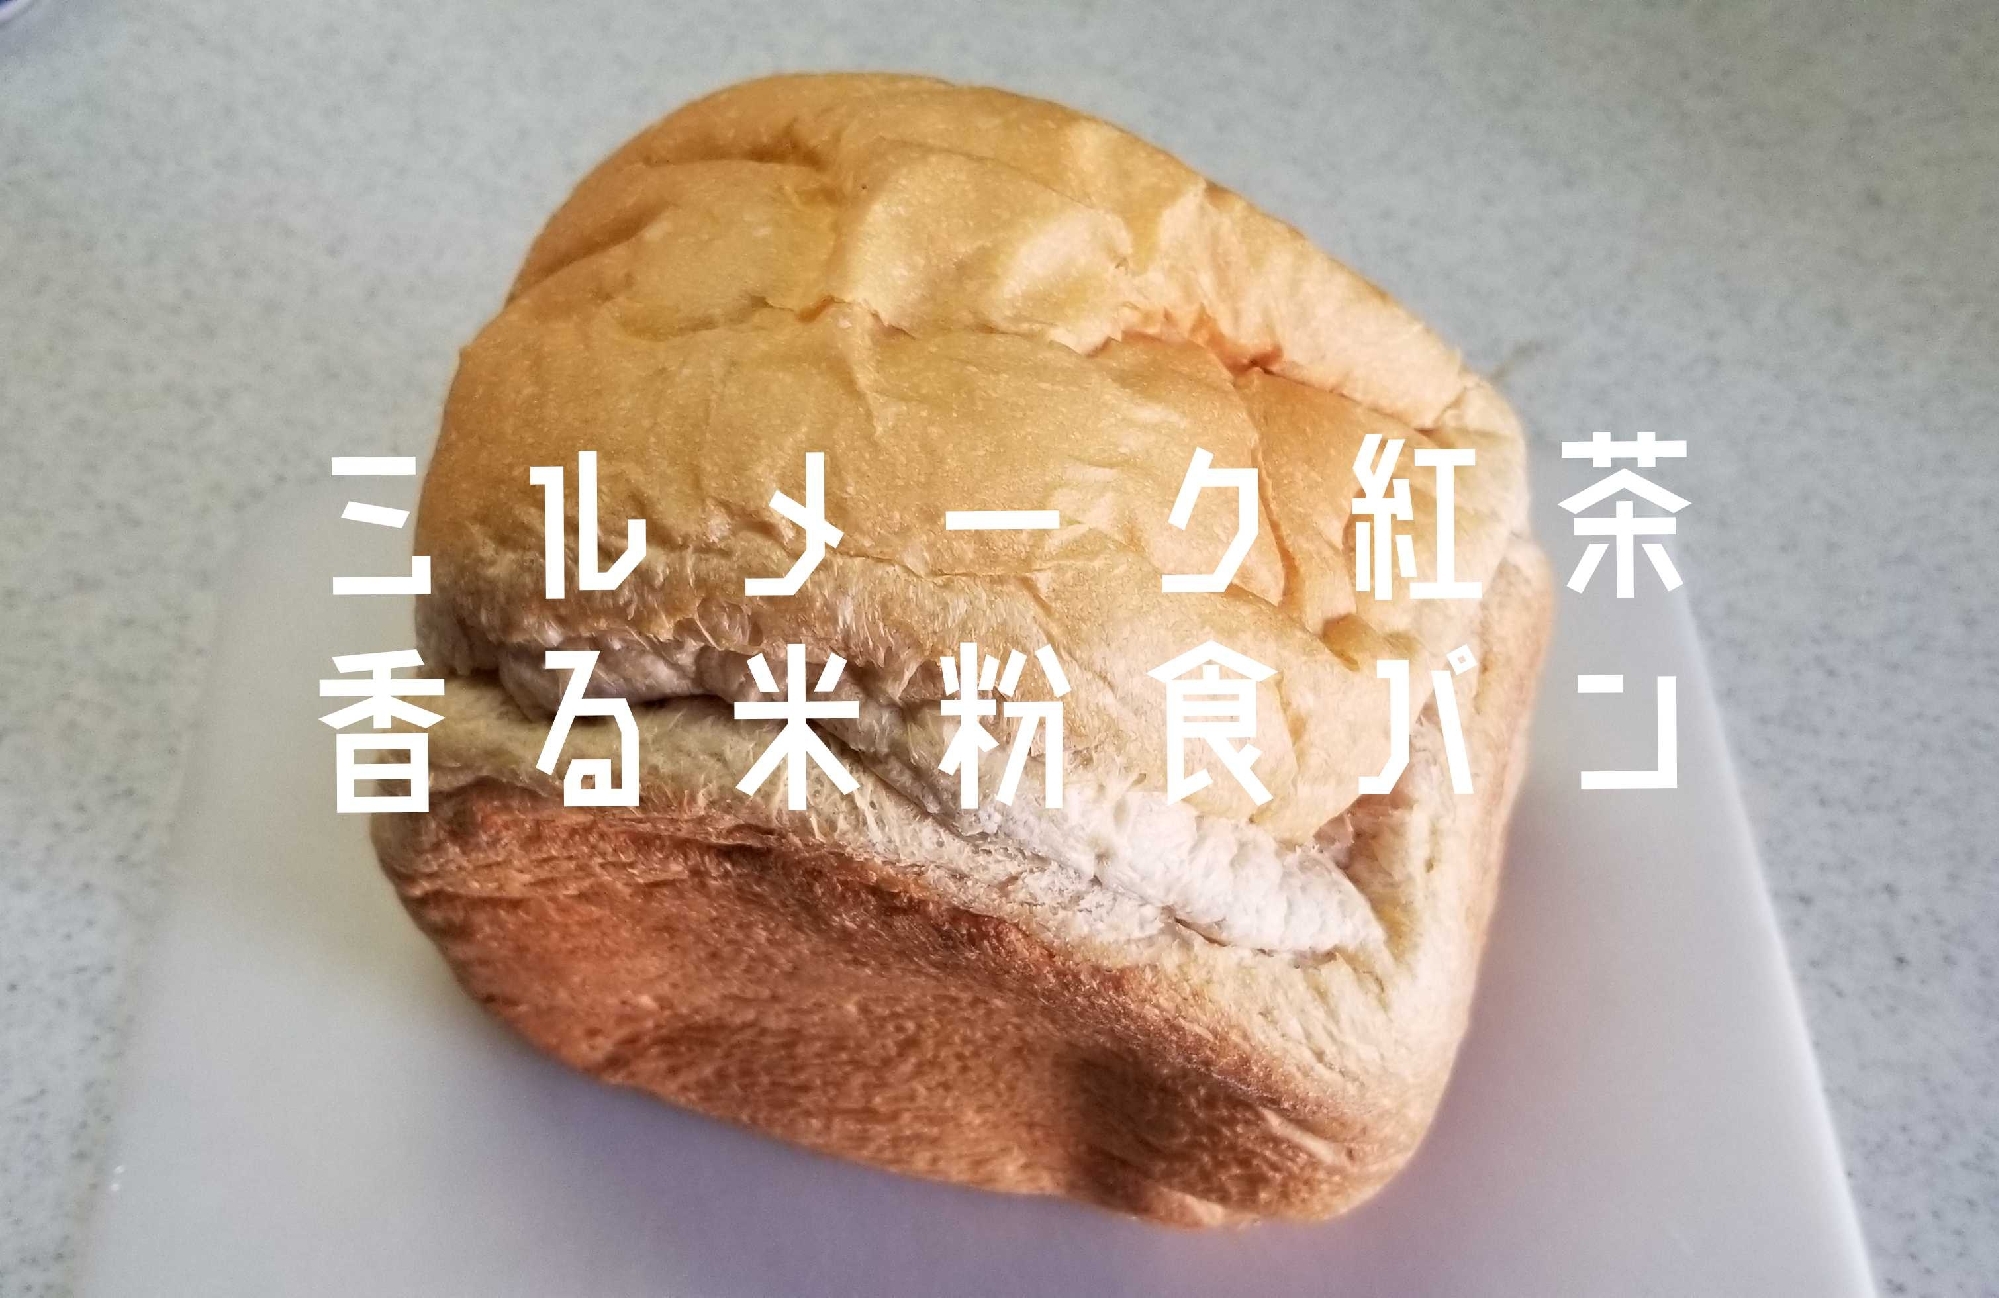 【ミルメーク紅茶の米粉食パン】HB